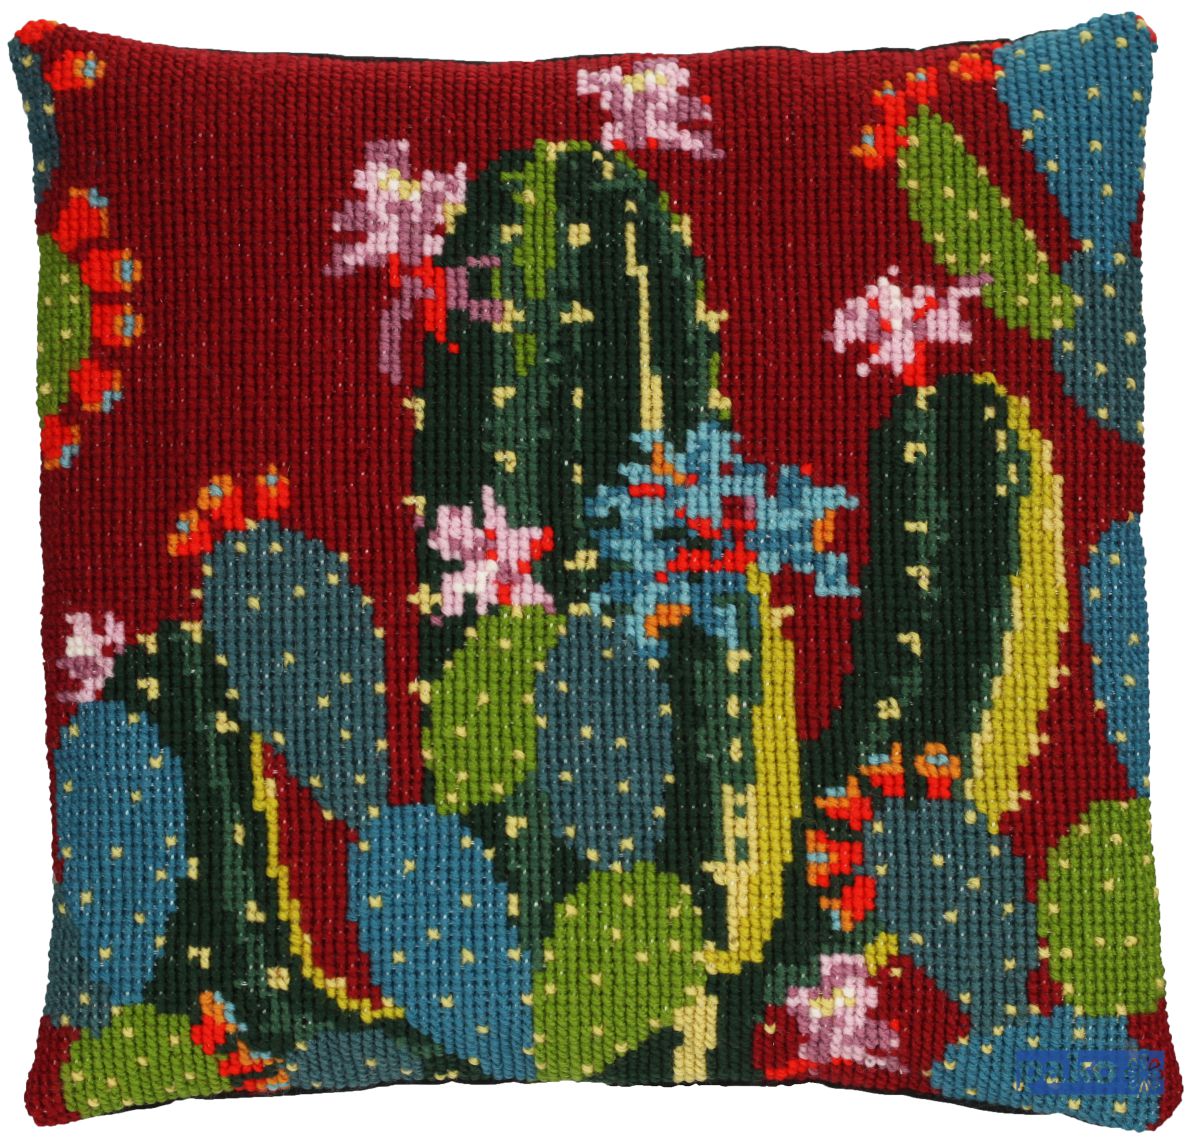 diy wollen kussen cactussen borduurpakket voorbedrukt